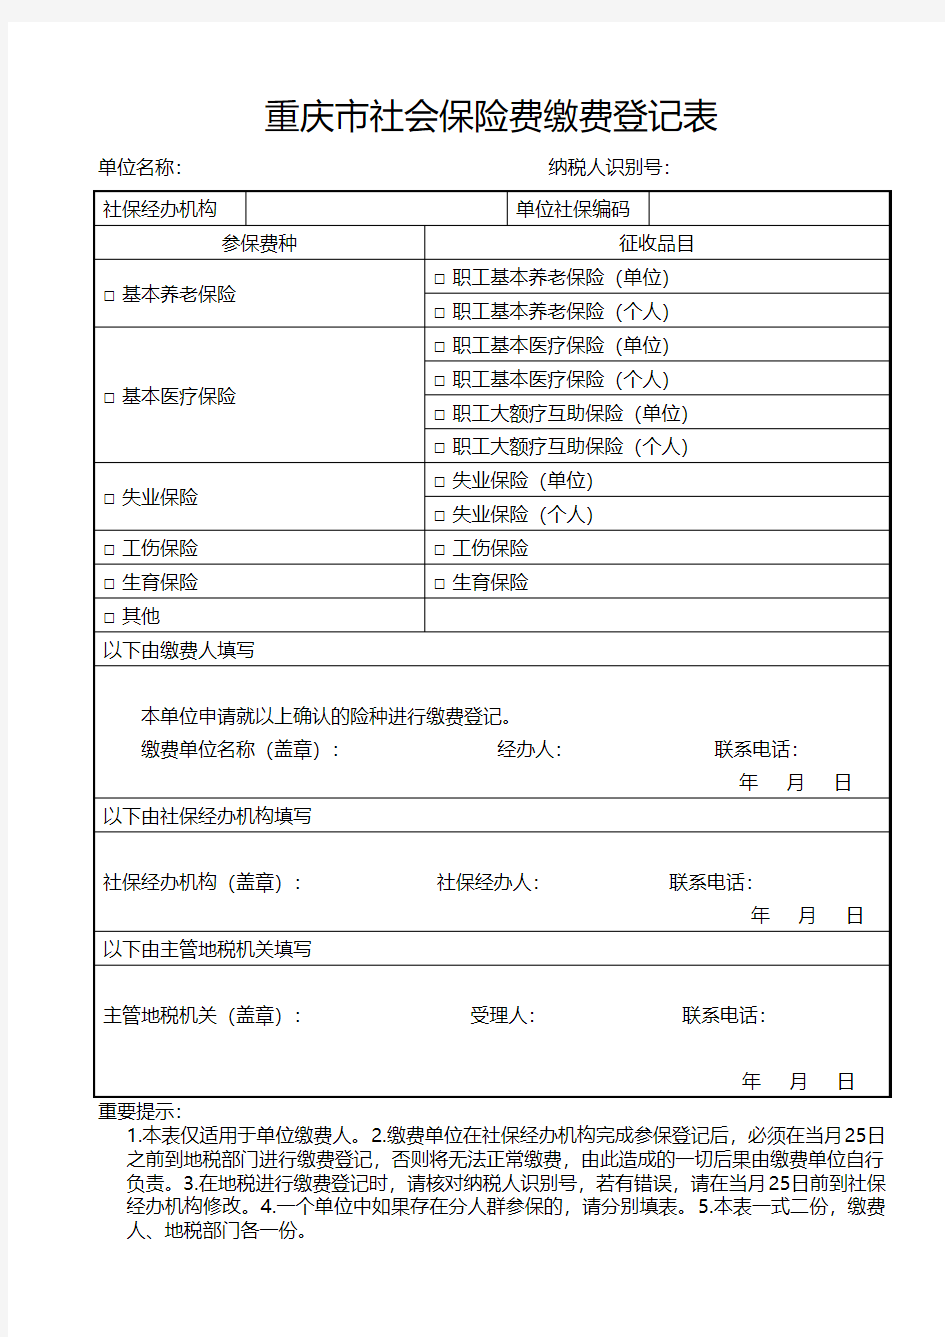 《重庆市社会保险费缴费登记表》